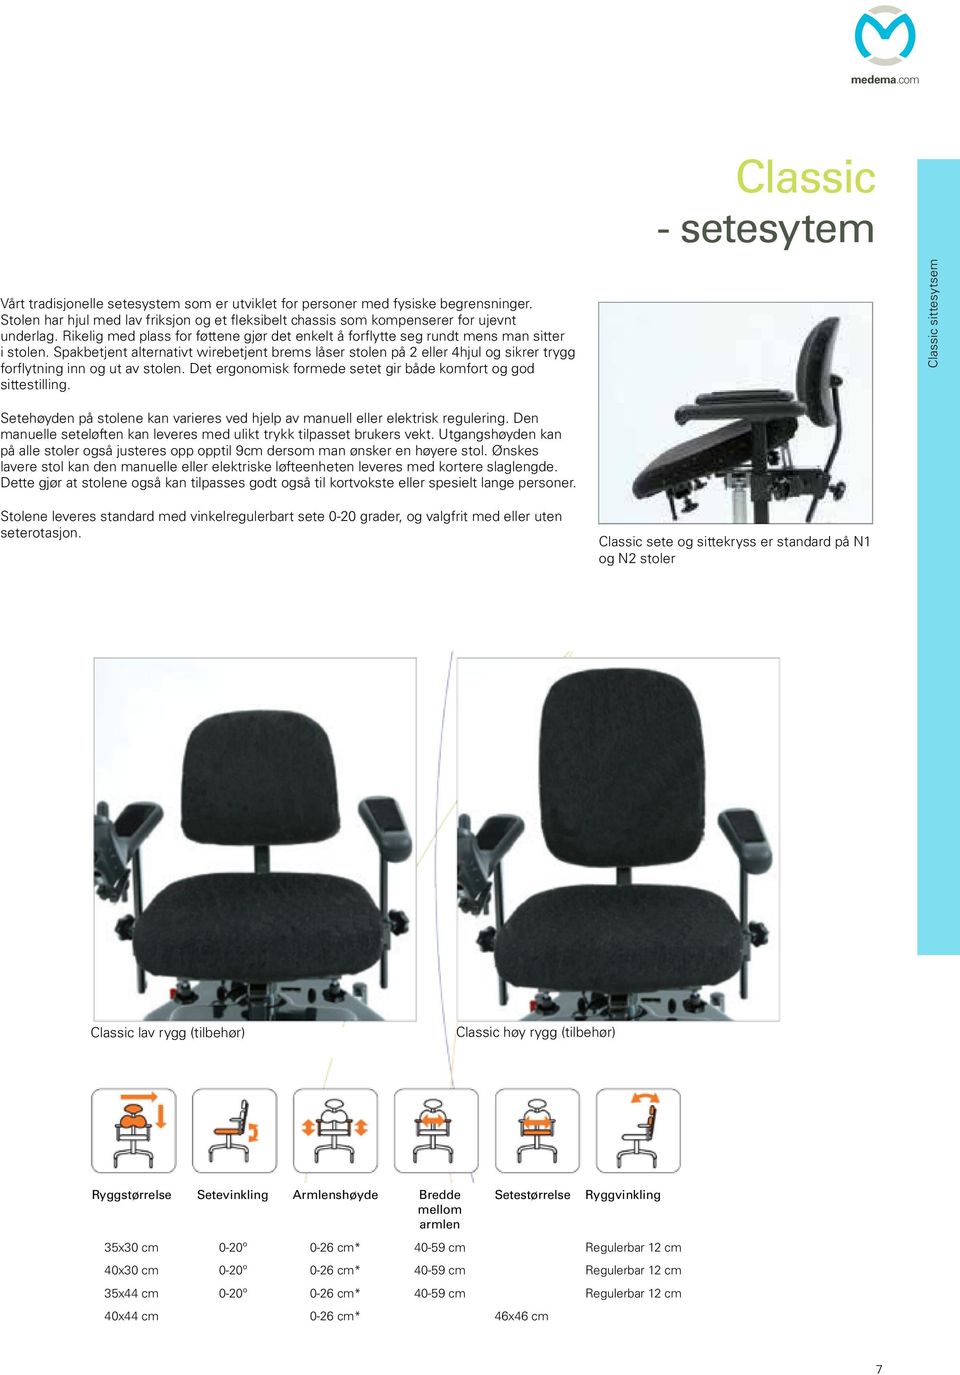 Spakbetjent alternativt wirebetjent brems låser stolen på 2 eller 4hjul og sikrer trygg forflytning inn og ut av stolen. Det ergonomisk formede setet gir både komfort og god sittestilling.